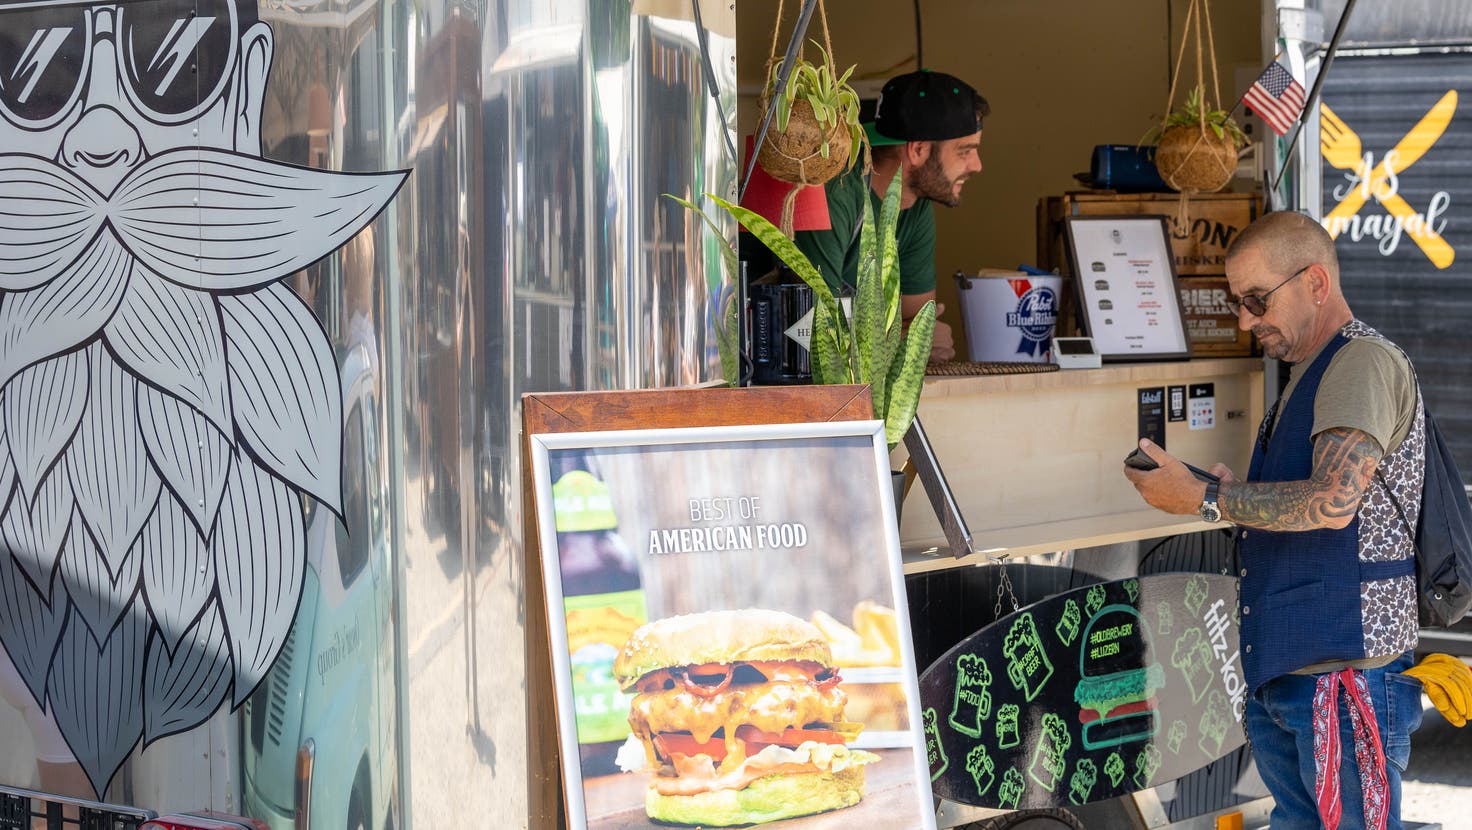 Fröhliche Gesichter und leckeres Essen gibts am Food Truck Festival, wie hier Churros. (Bild Andre Veith)